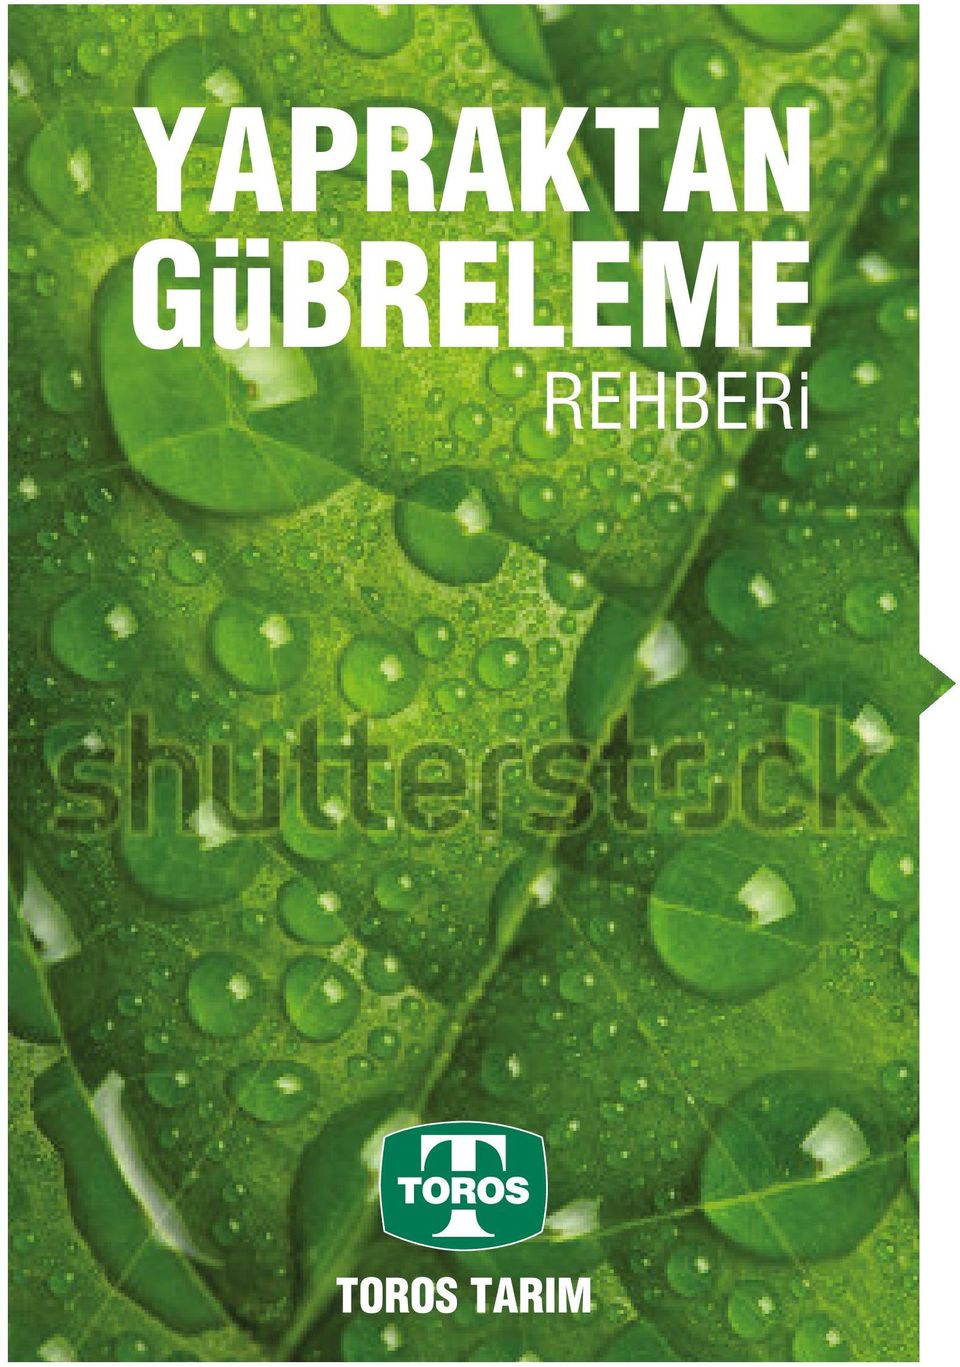 GüBRELEME YAPRAKTAN. REHBERi - PDF Free Download